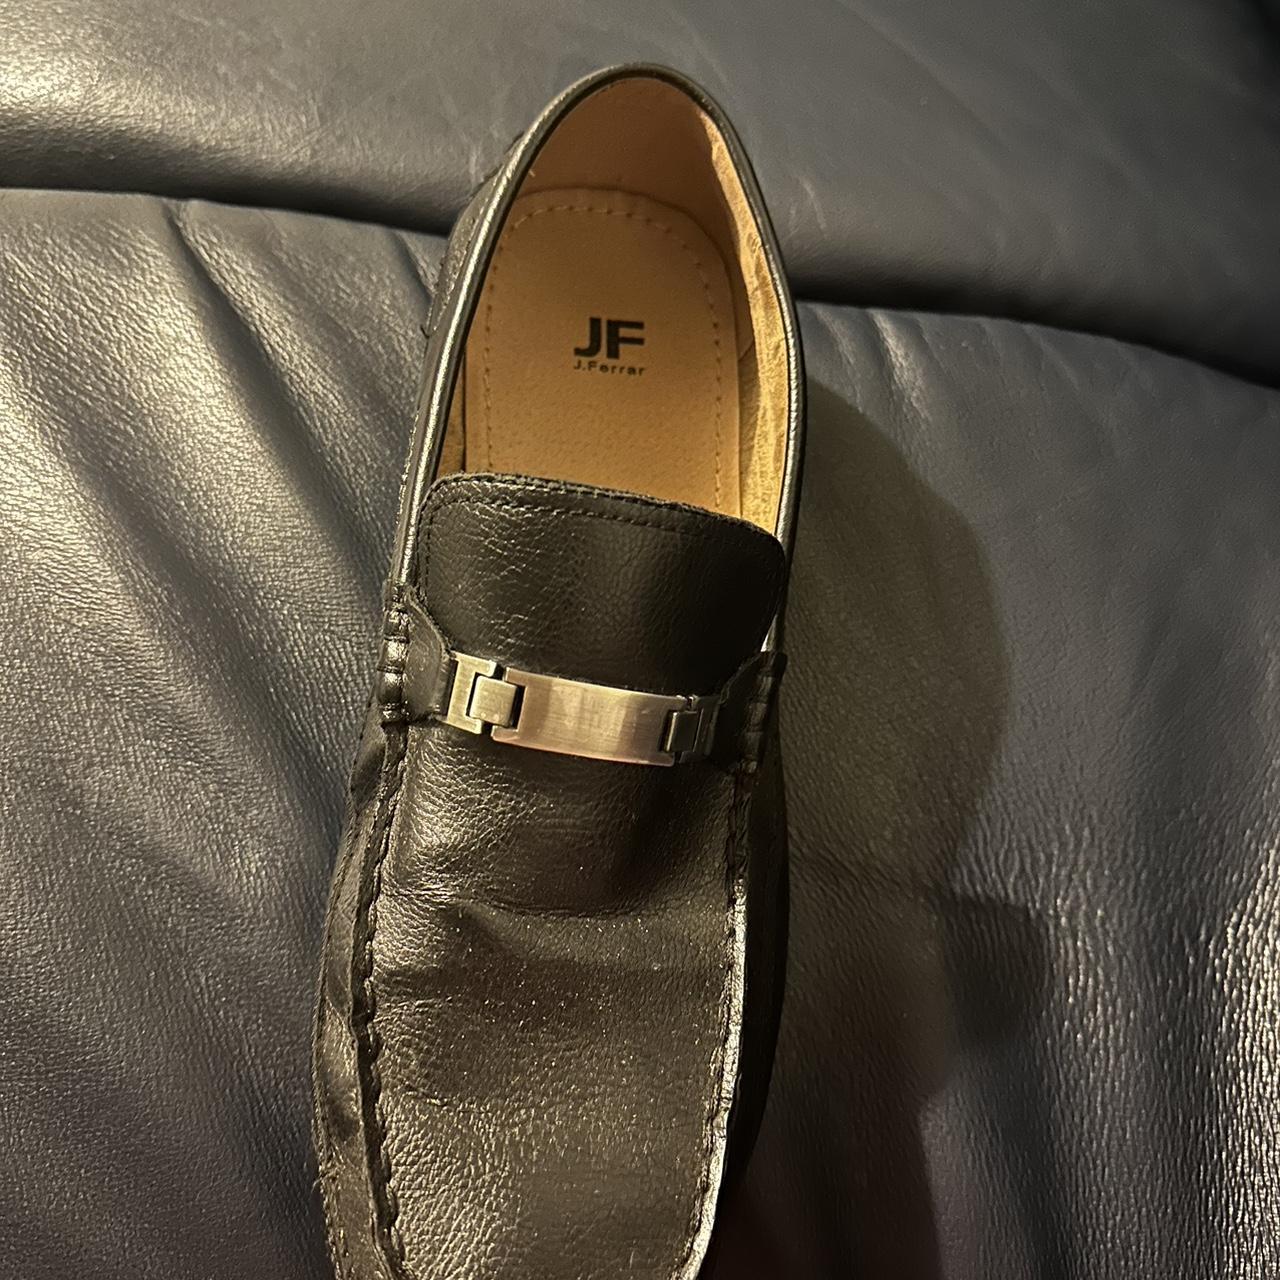 JF J.Ferrar fancy black shoes - Depop